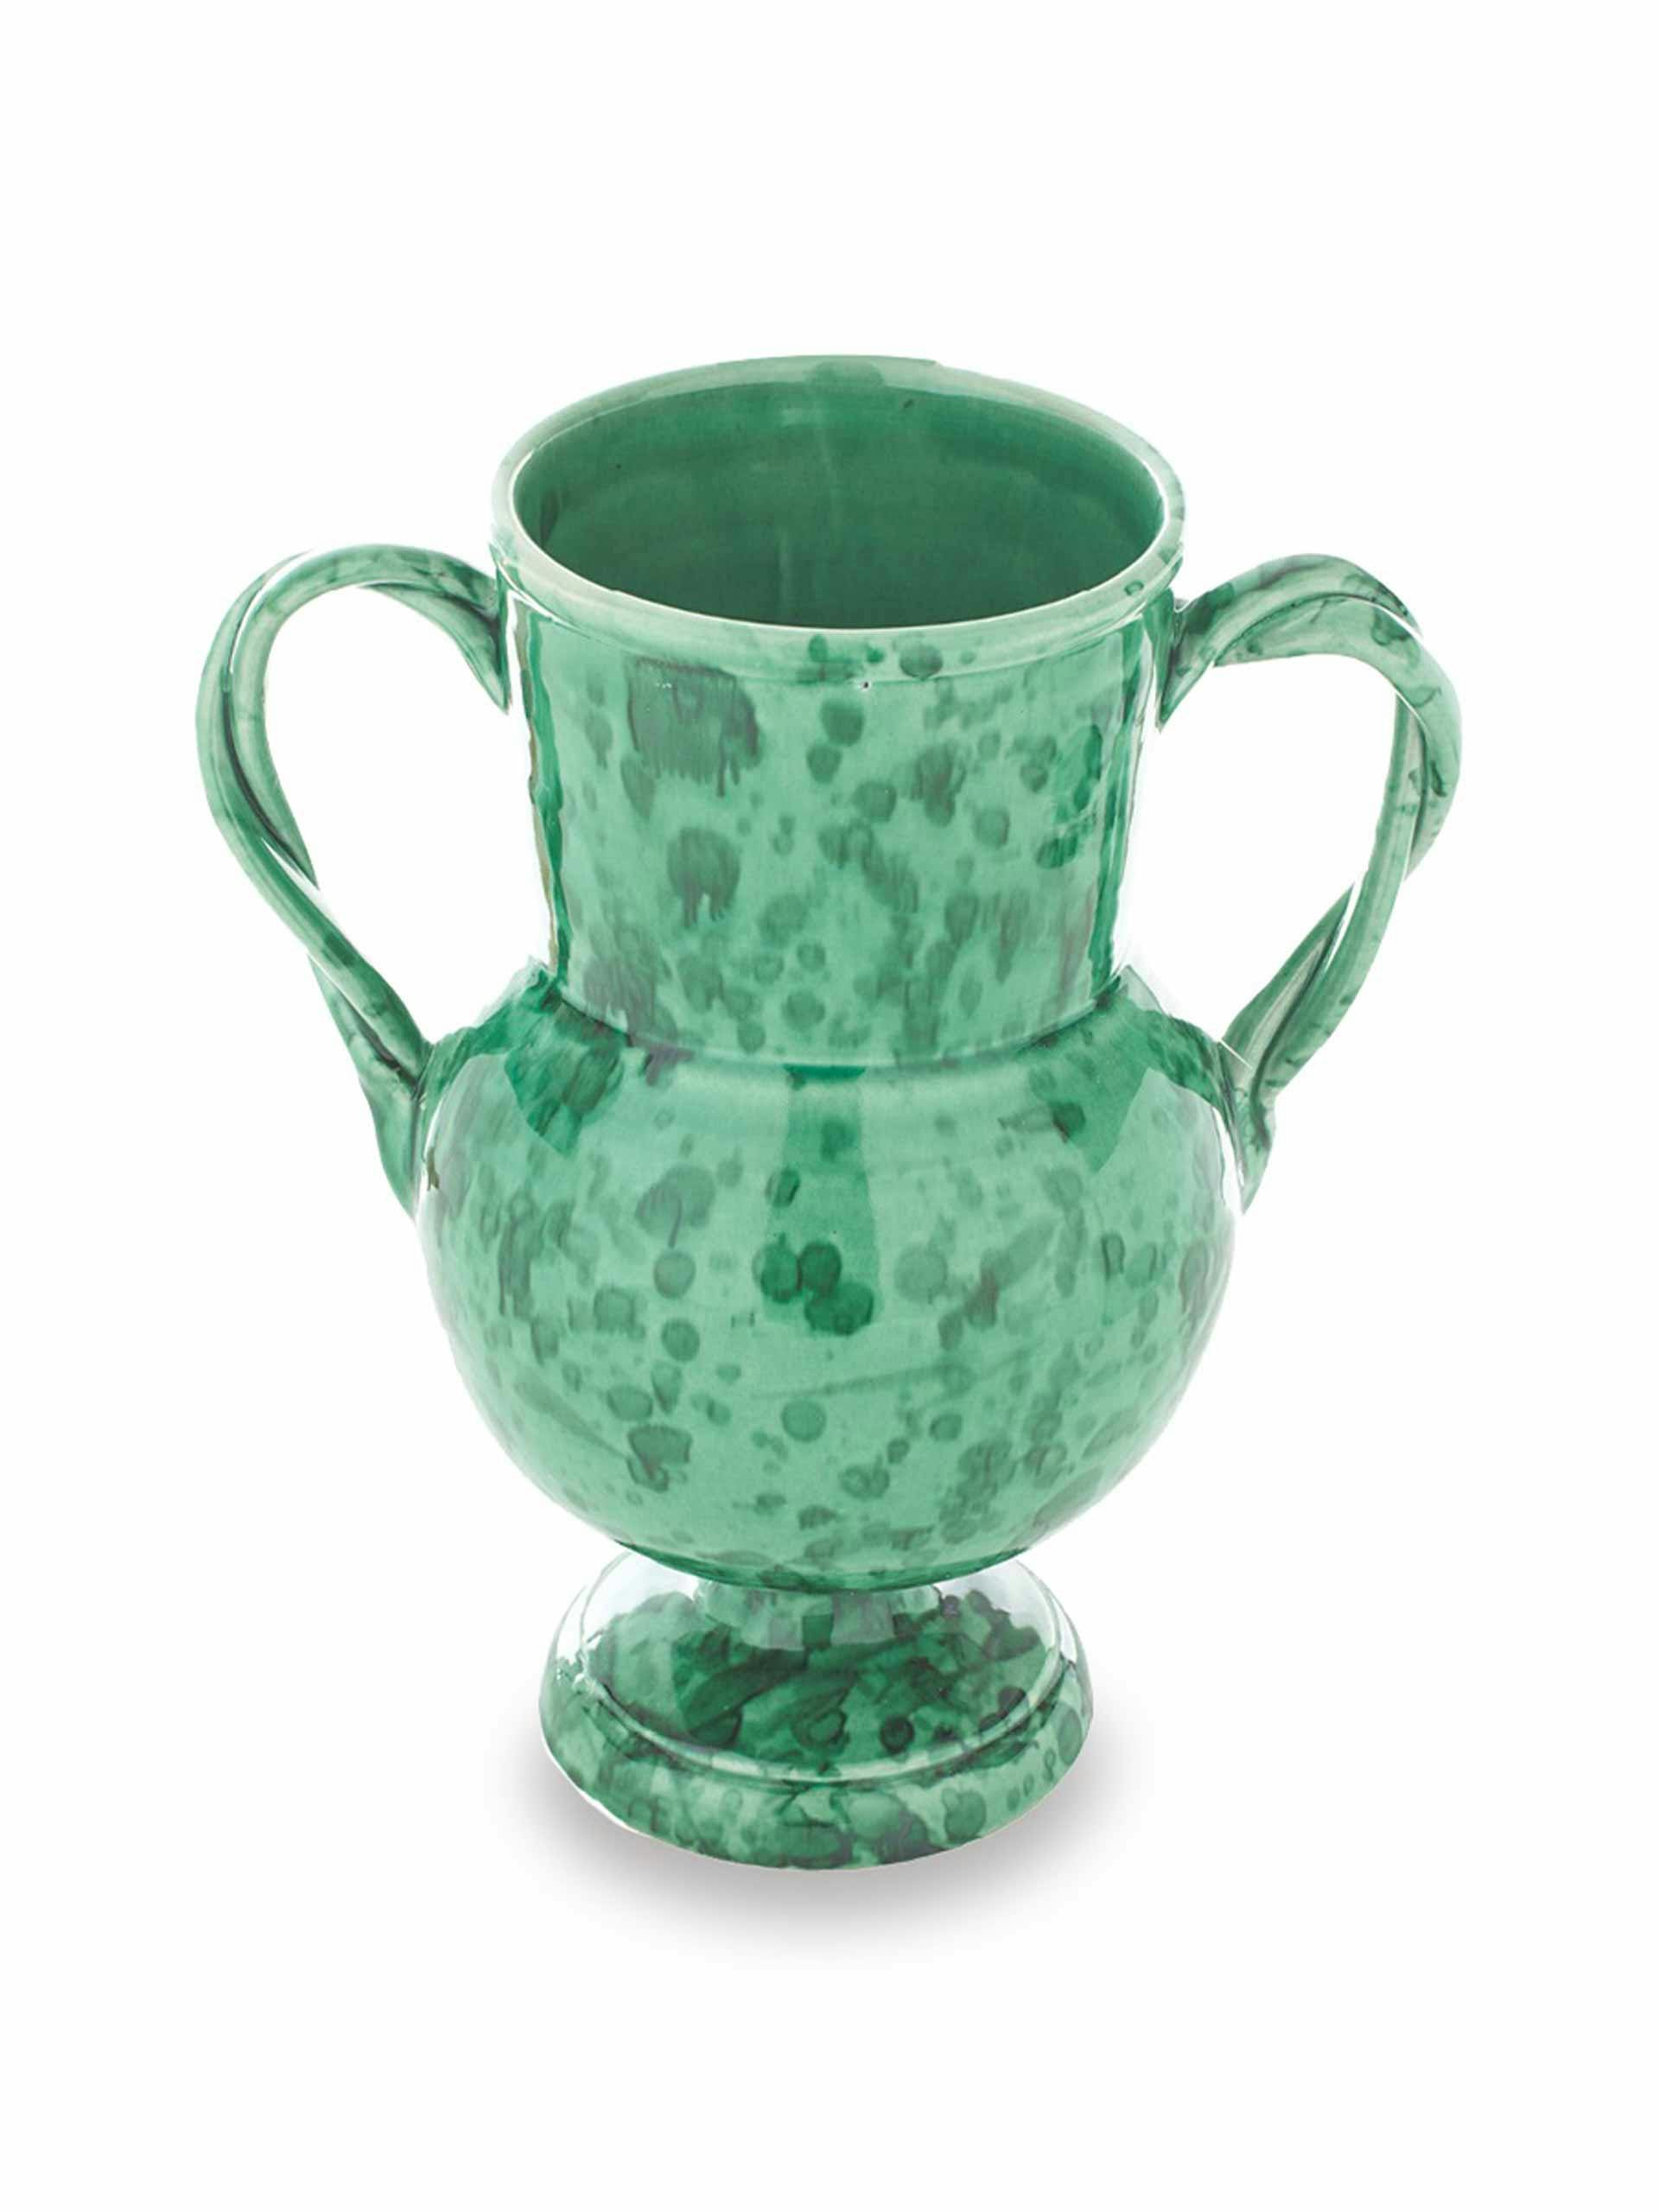 Amphora glazed vase